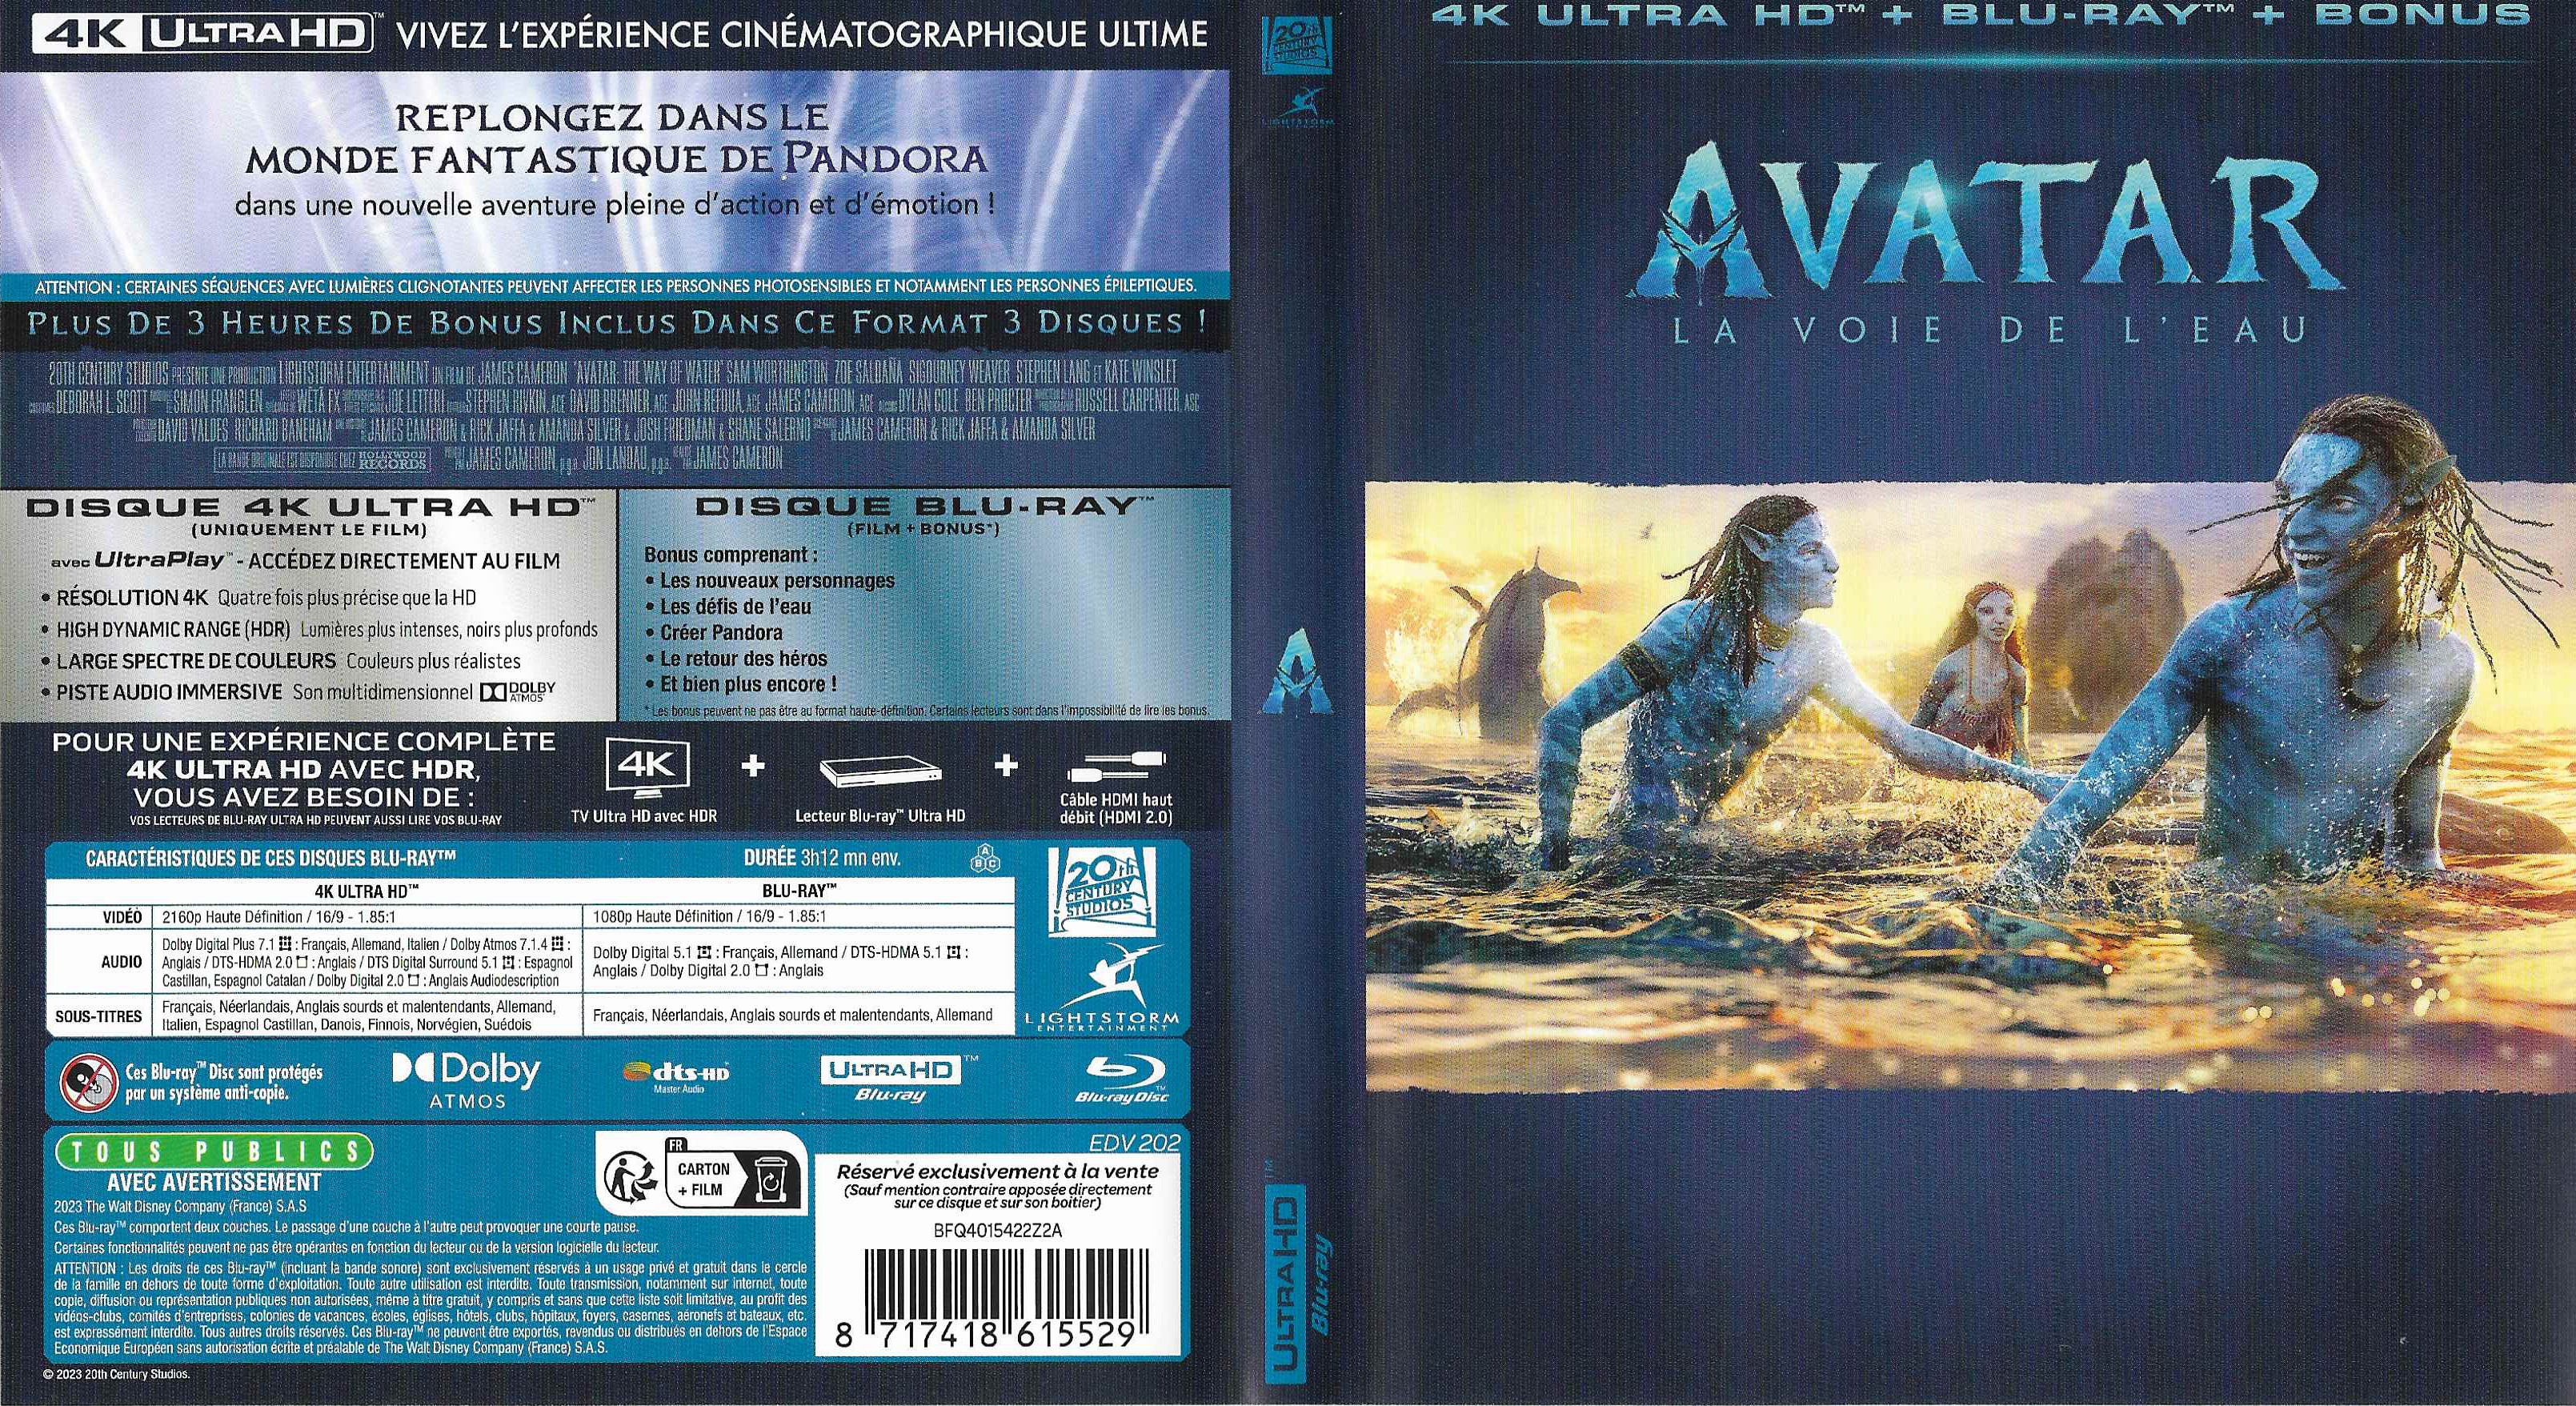 Jaquette DVD Avatar La Voie de l